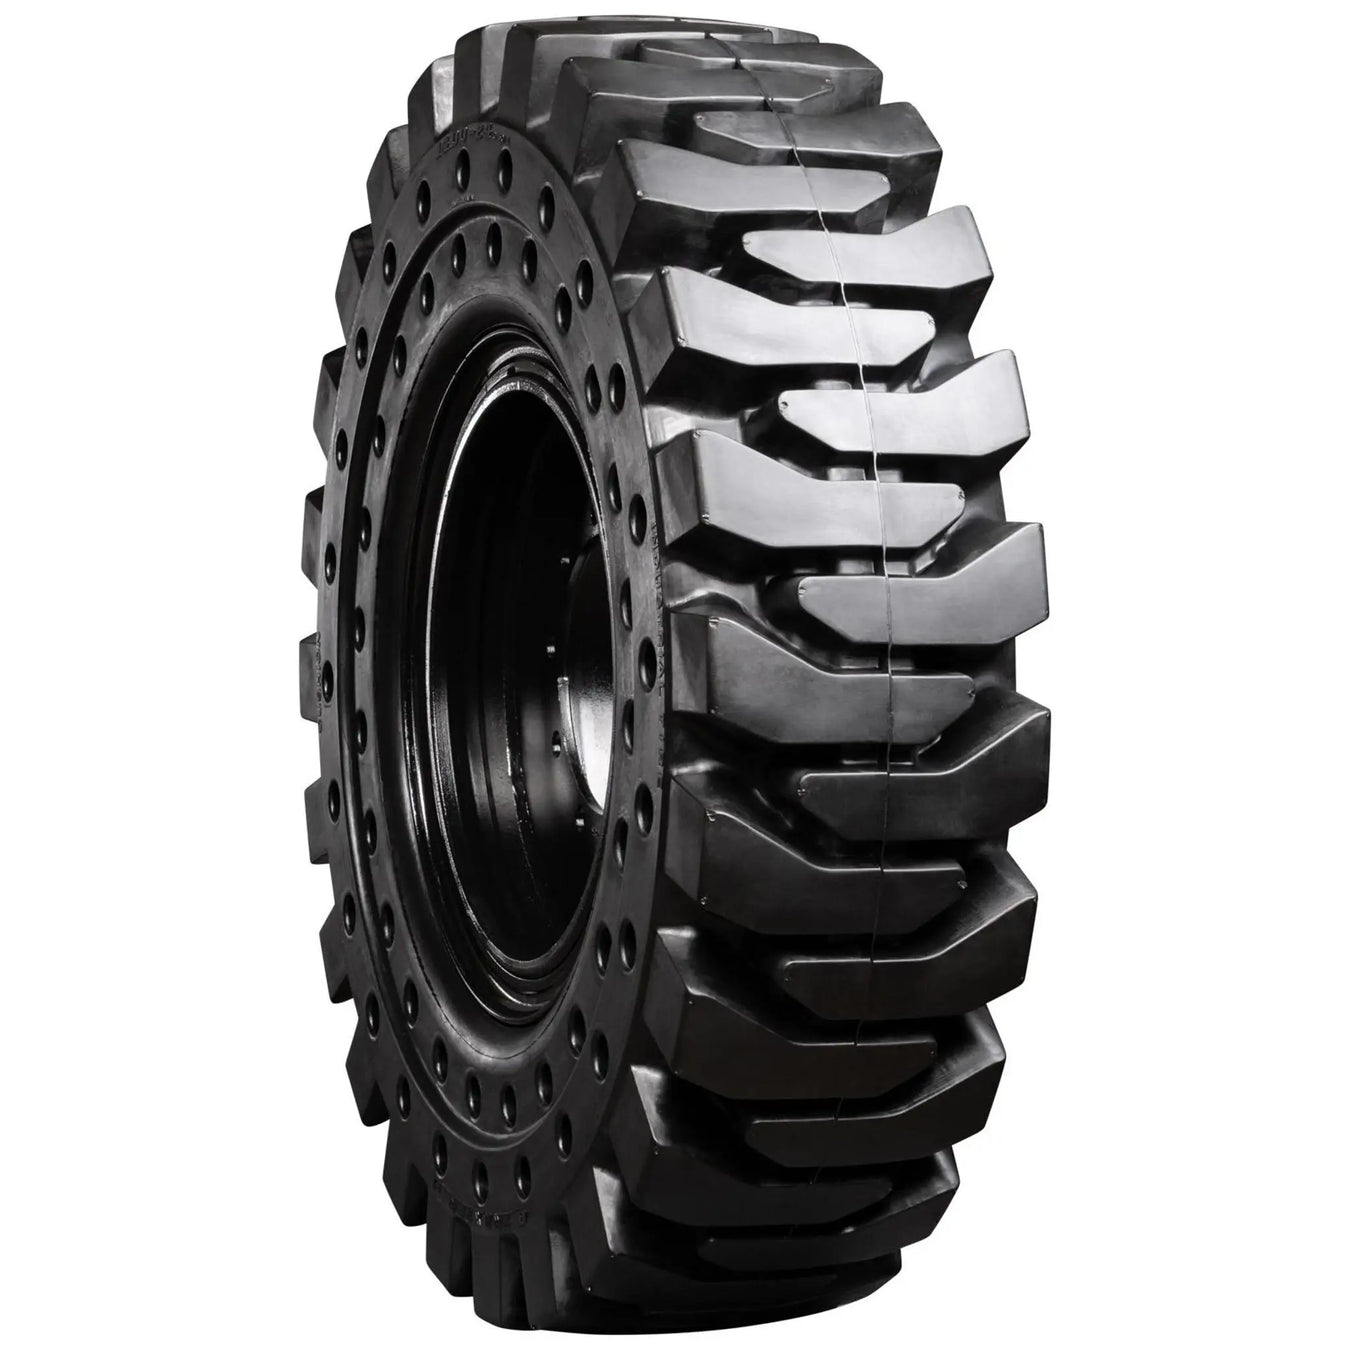 Telehandler Tires - Pneumatic Tire Size - 14.00-24